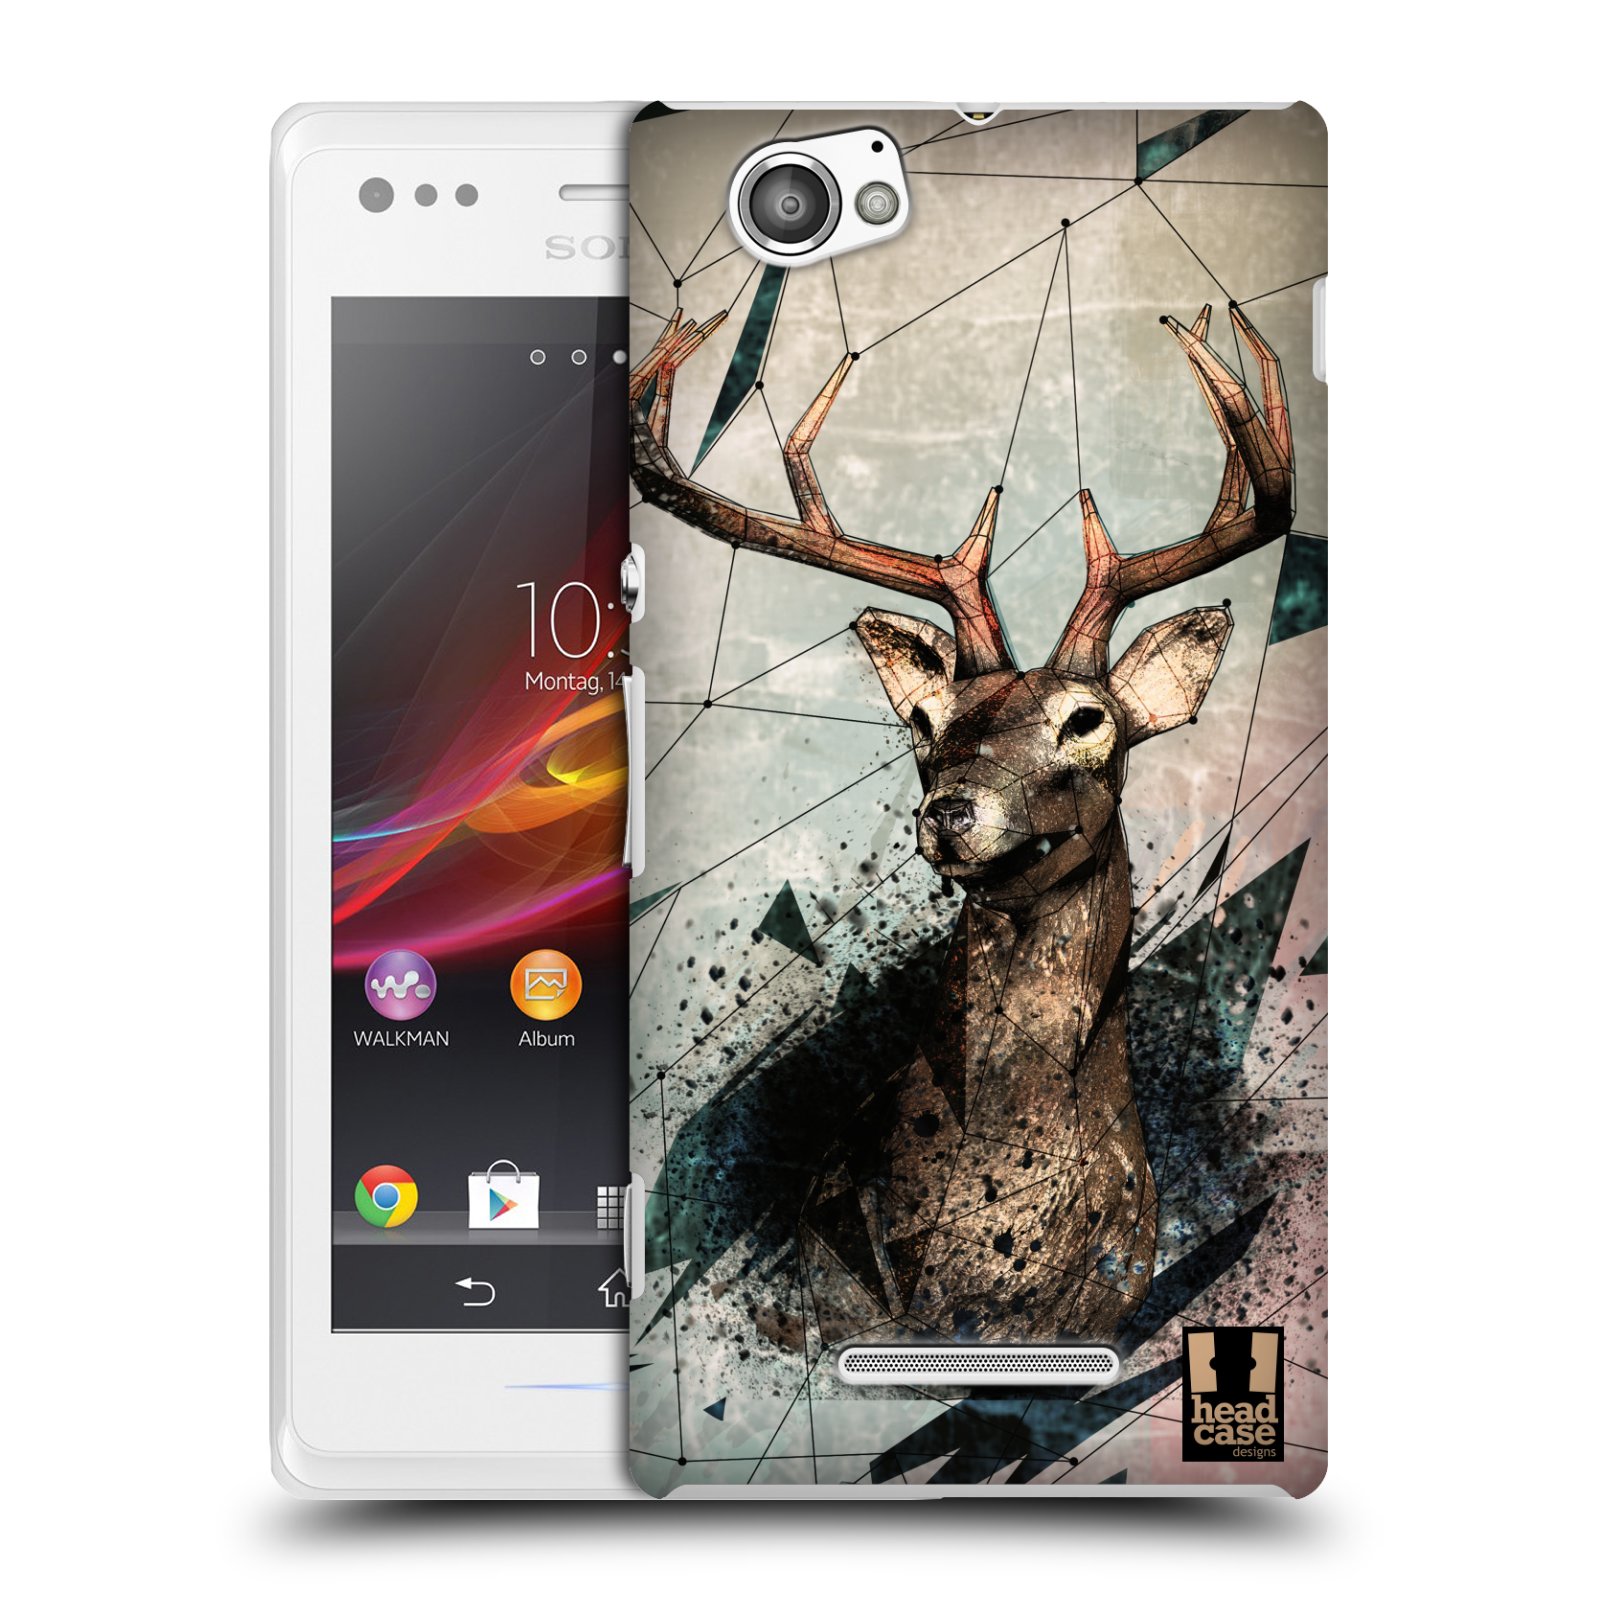 HEAD CASE plastový obal na mobil Sony Xperia M vzor Skica zvíře kreslené jelen